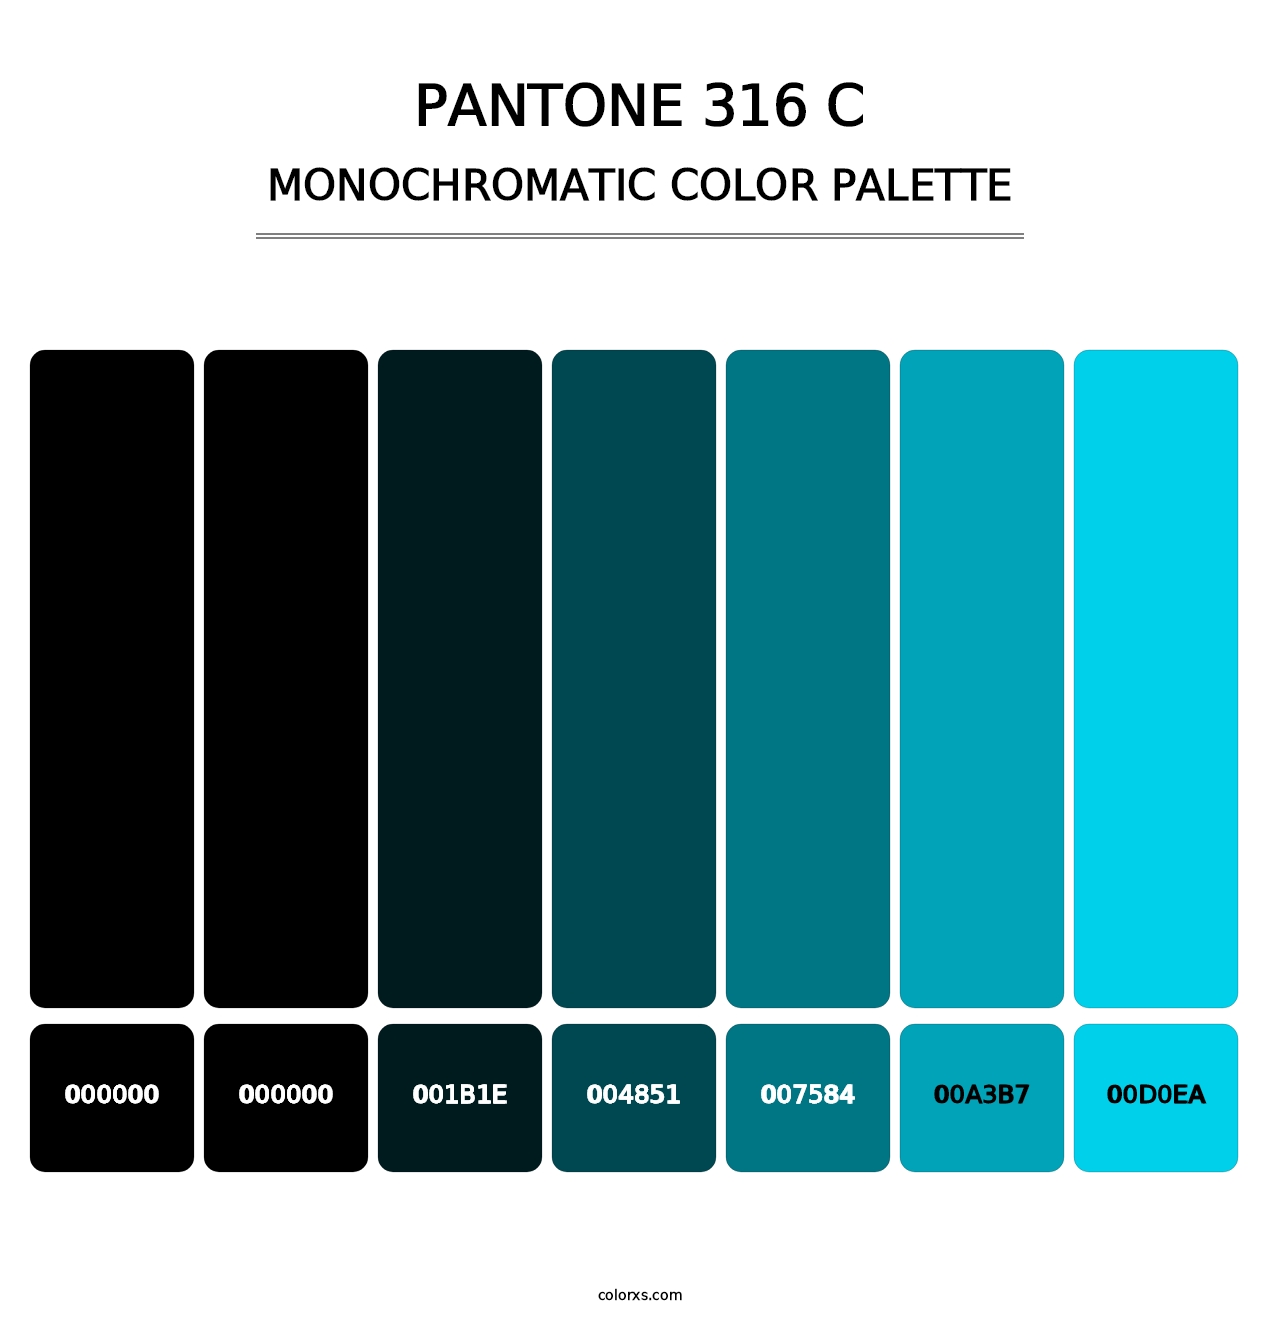 PANTONE 316 C - Monochromatic Color Palette